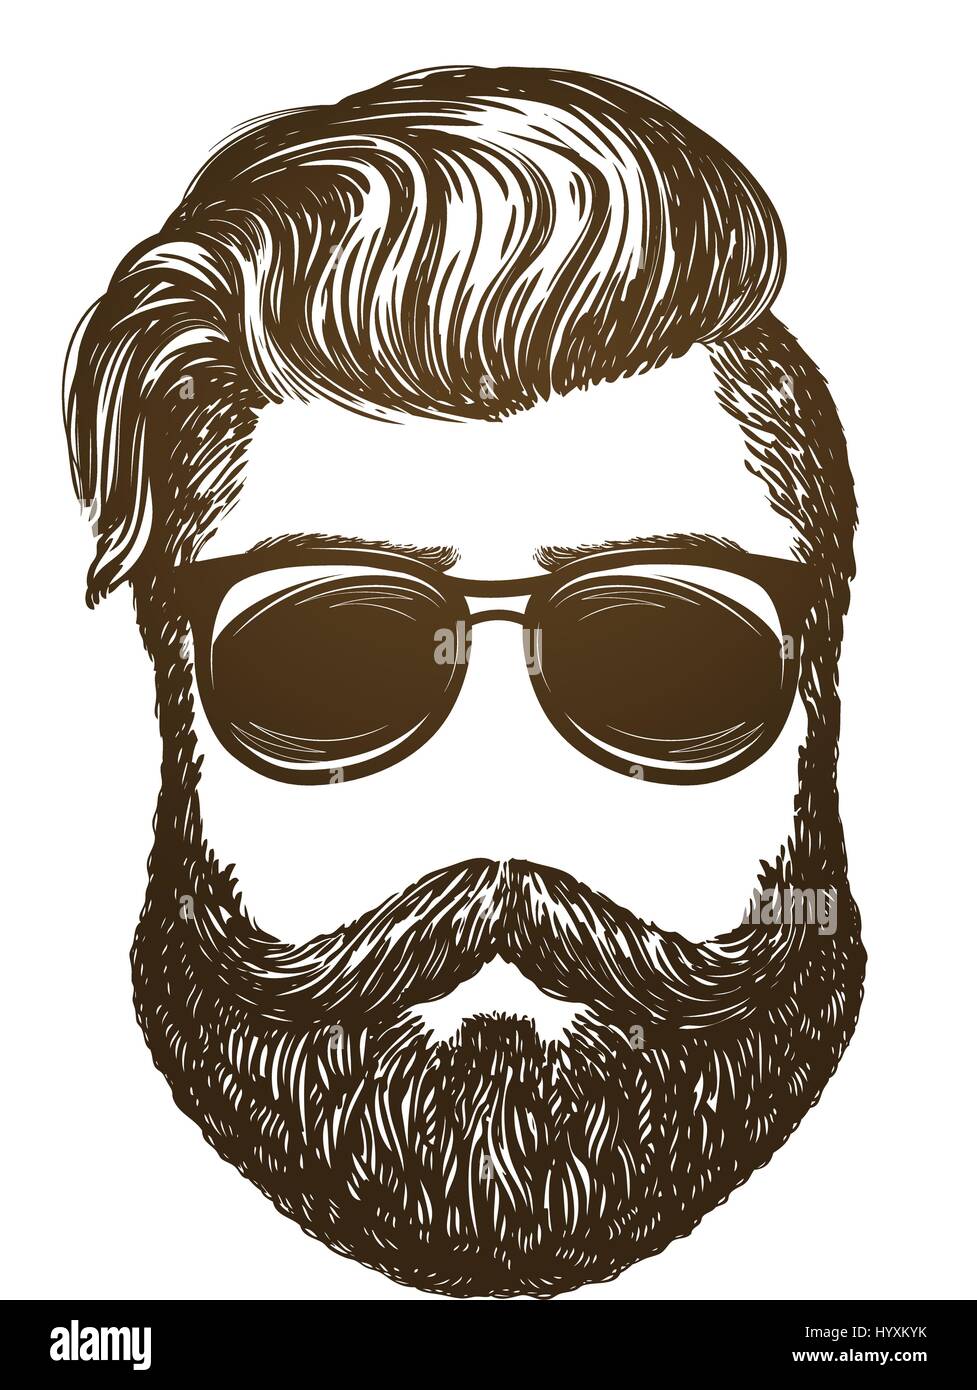 Disegnata a mano ritratto di uomo con barba. Hipster, occhiali da sole sketch. Vintage illustrazione vettoriale Illustrazione Vettoriale